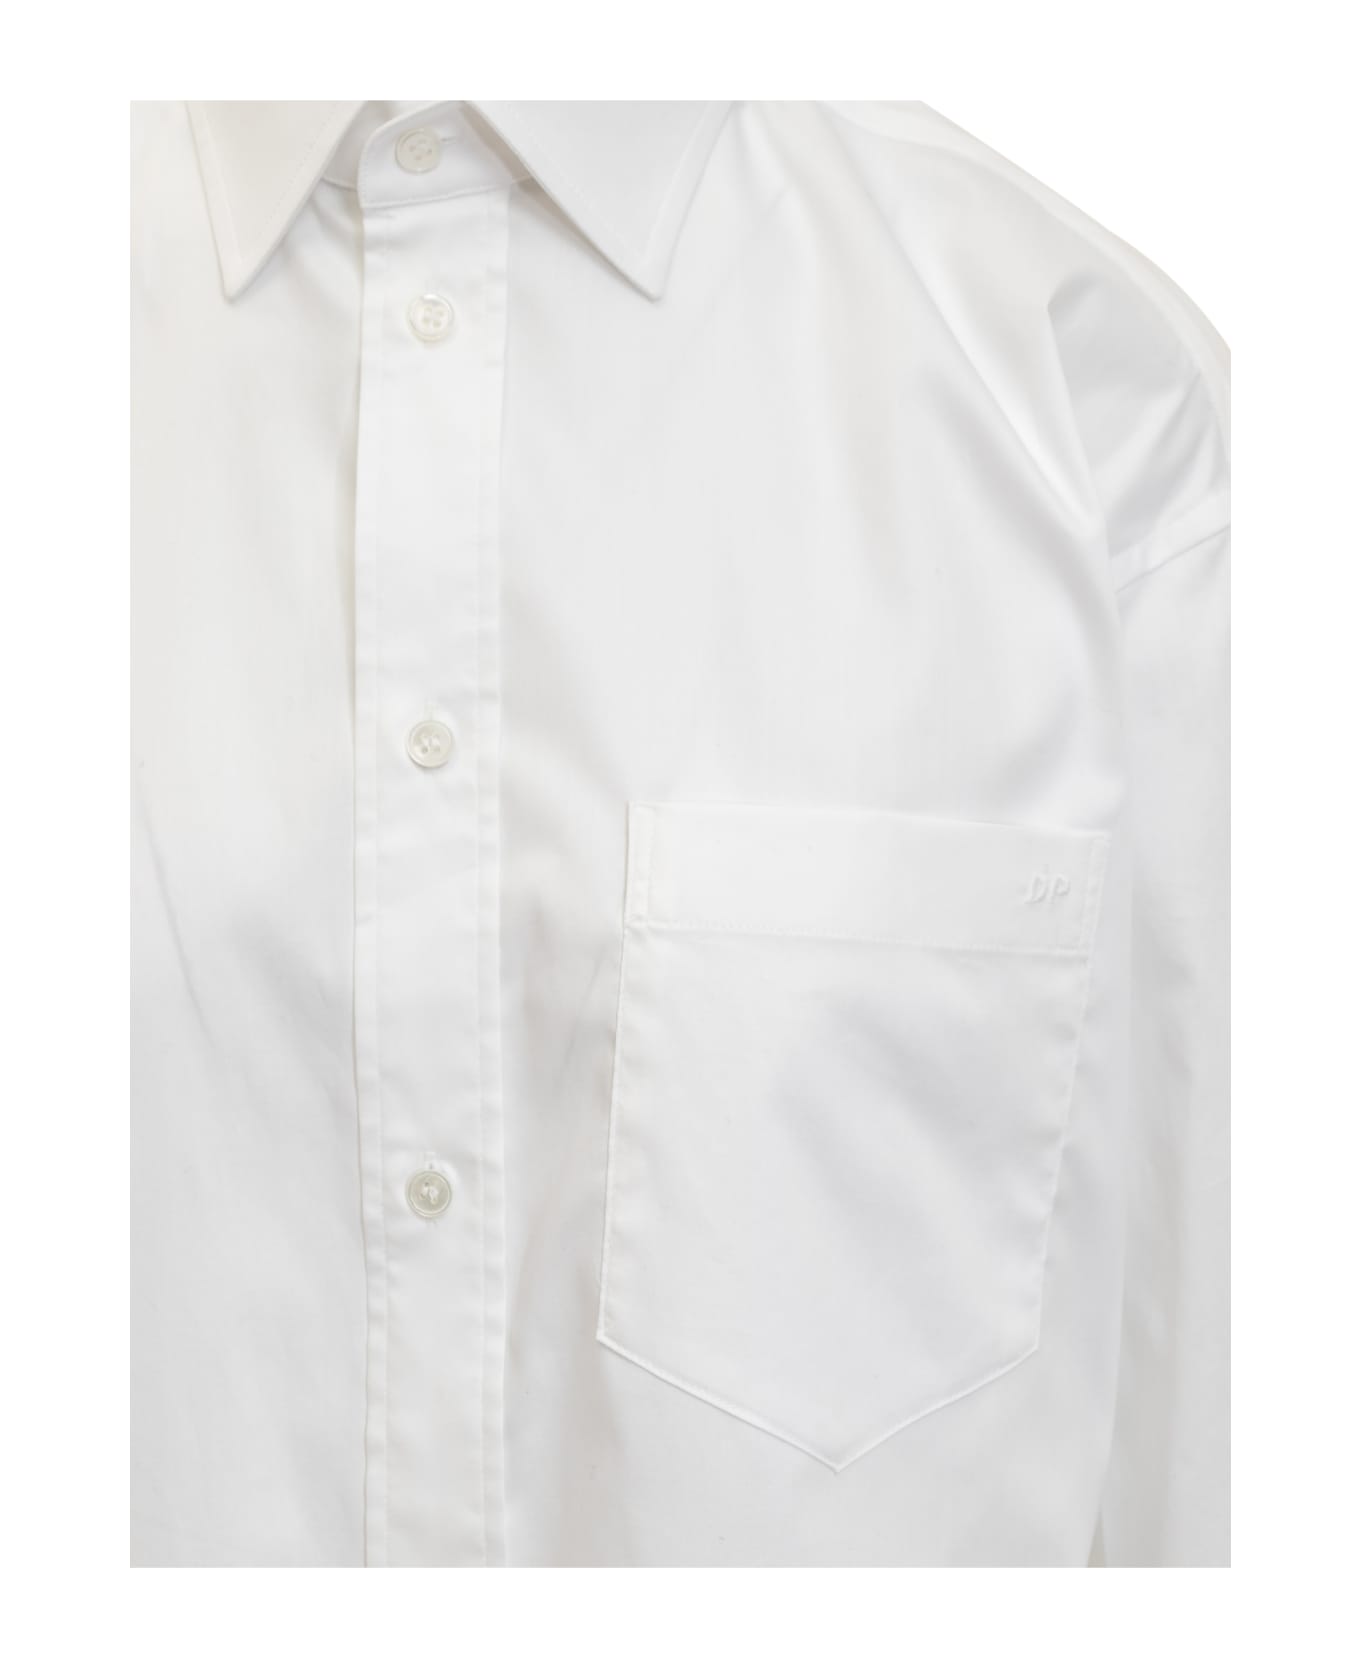 DARKPARK Anne Tailored Shirt - WHITE